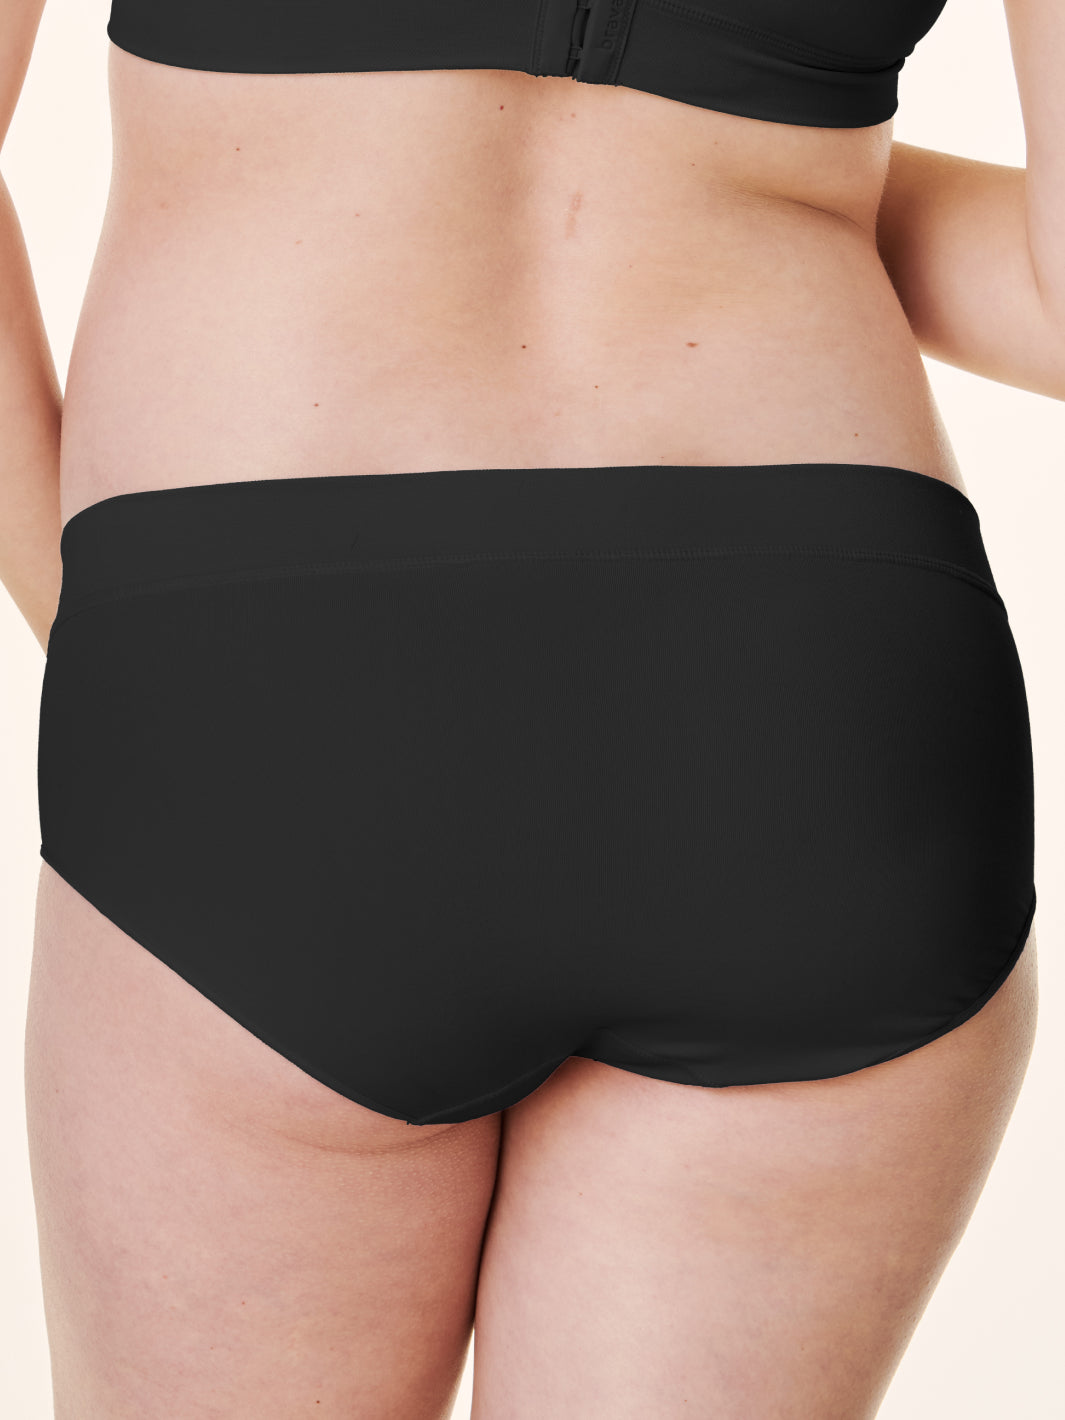 NEW! Crossover Panty – Bravado Designs Canada